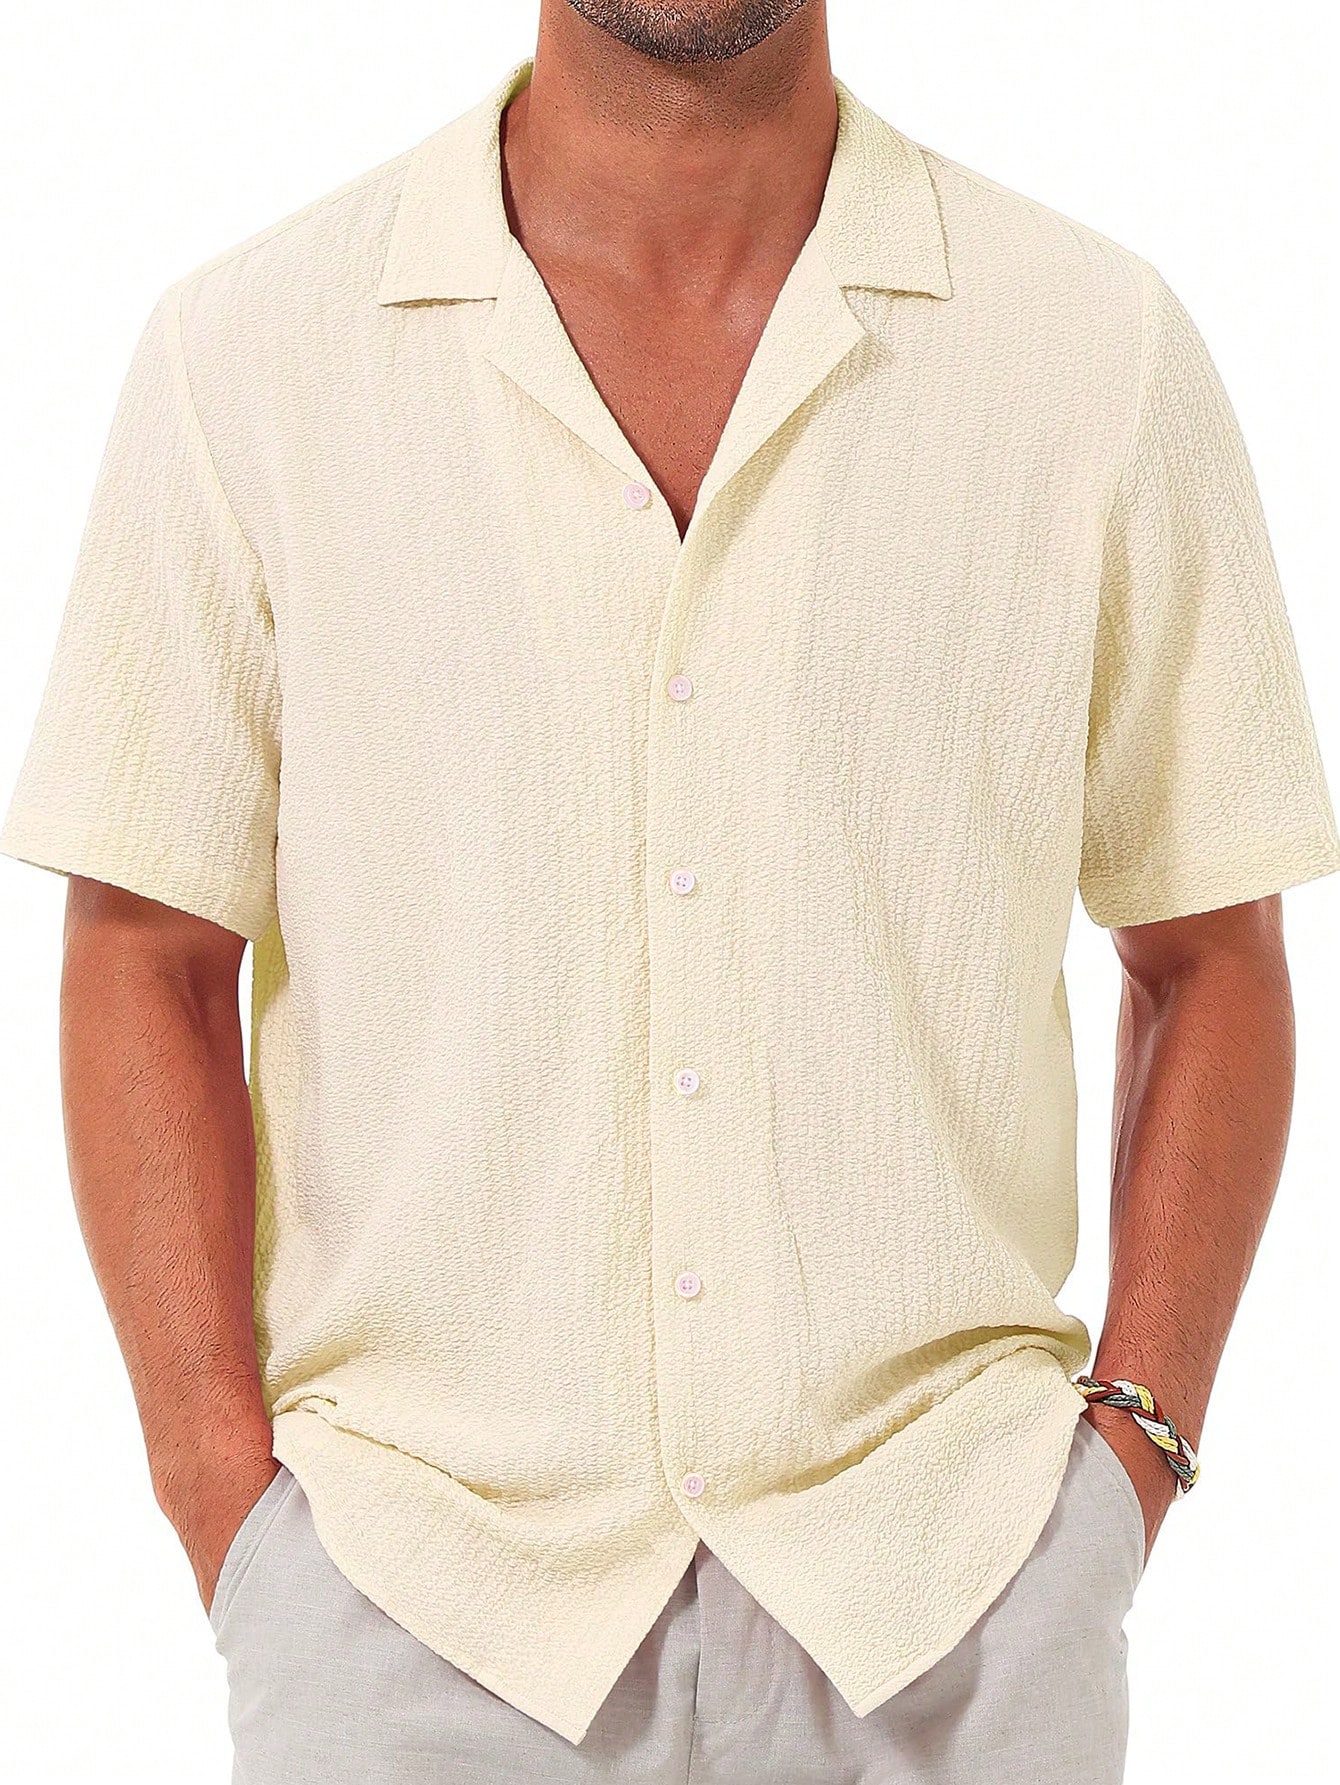 Мужская повседневная рубашка с коротким рукавом на пуговицах, бежевый мужская повседневная рубашка с коротким рукавом на пуговицах бежевый